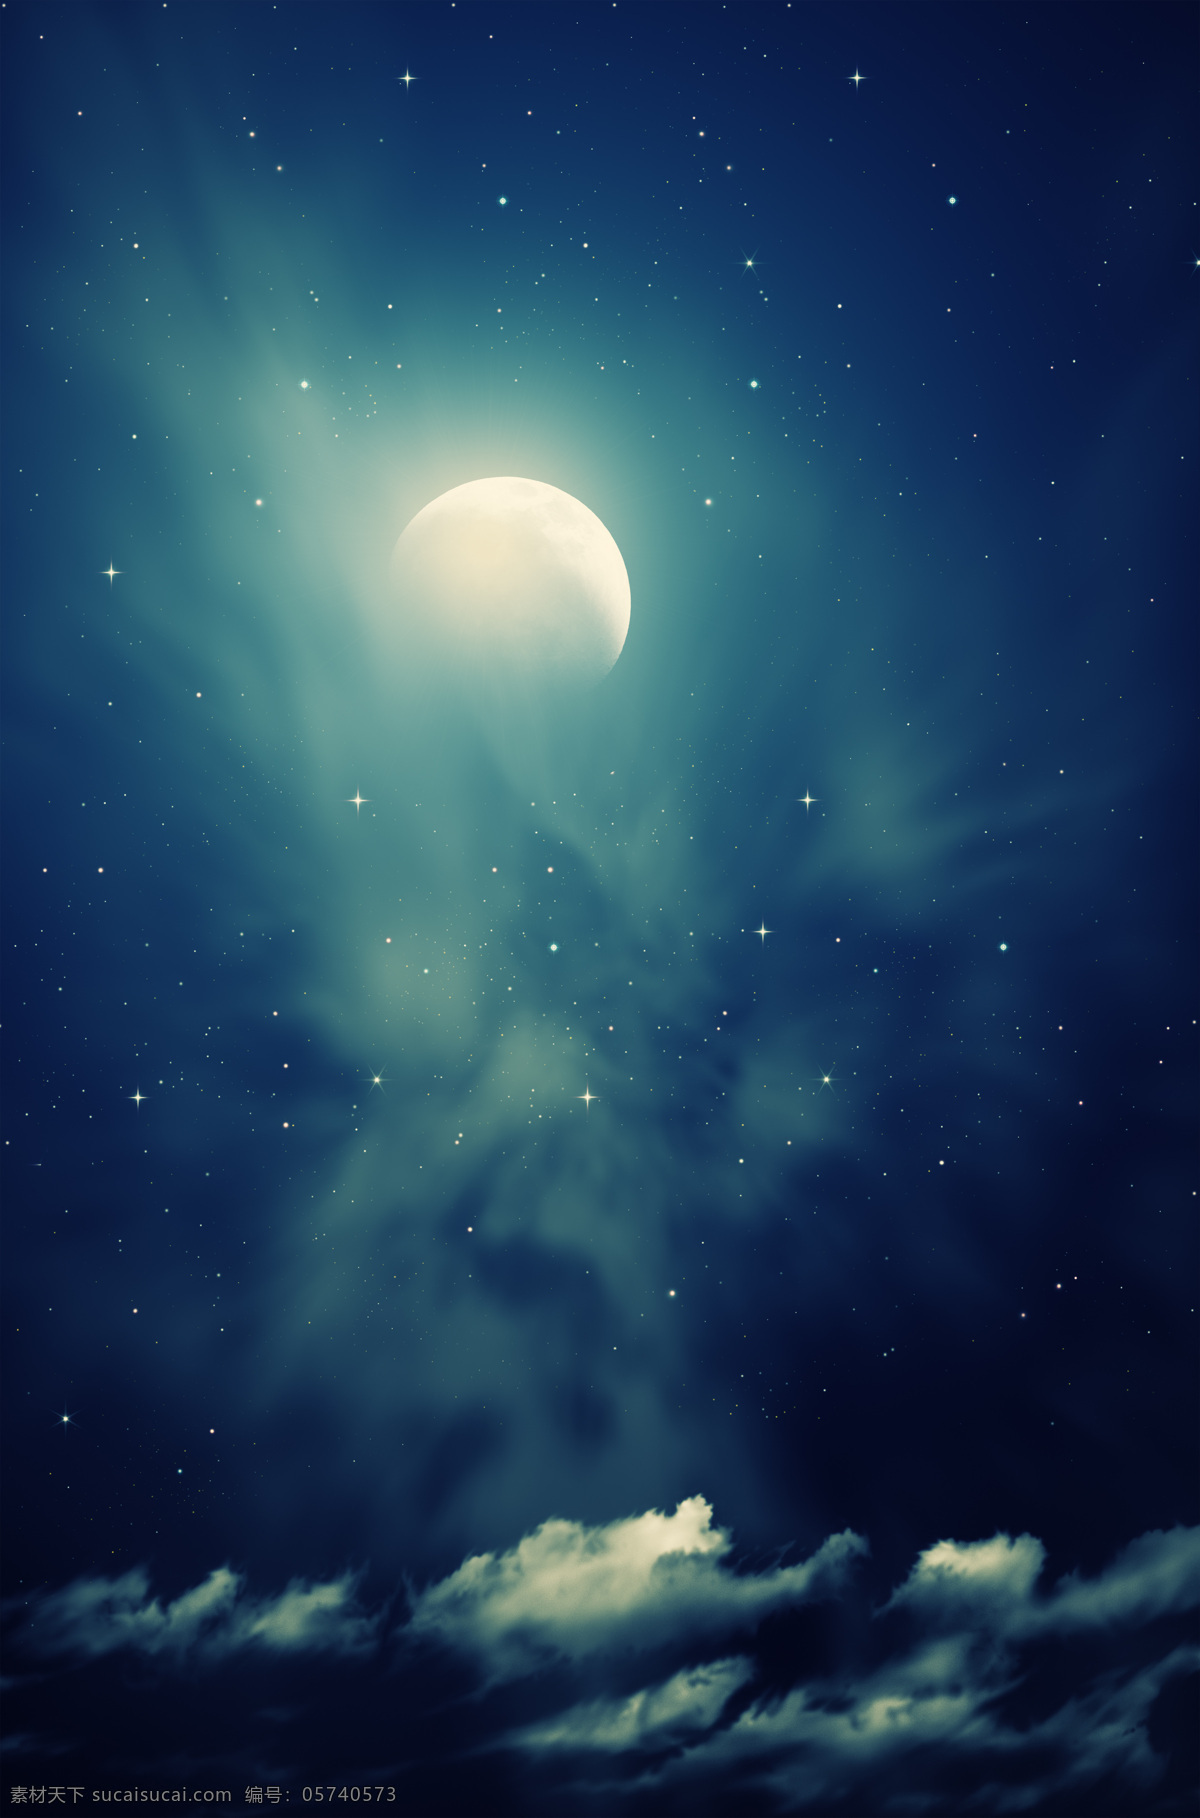 梦幻 星空 星空摄影 云层 蓝色星空 月色 月亮 月亮摄影 月亮素材 弯月 山水风景 风景图片